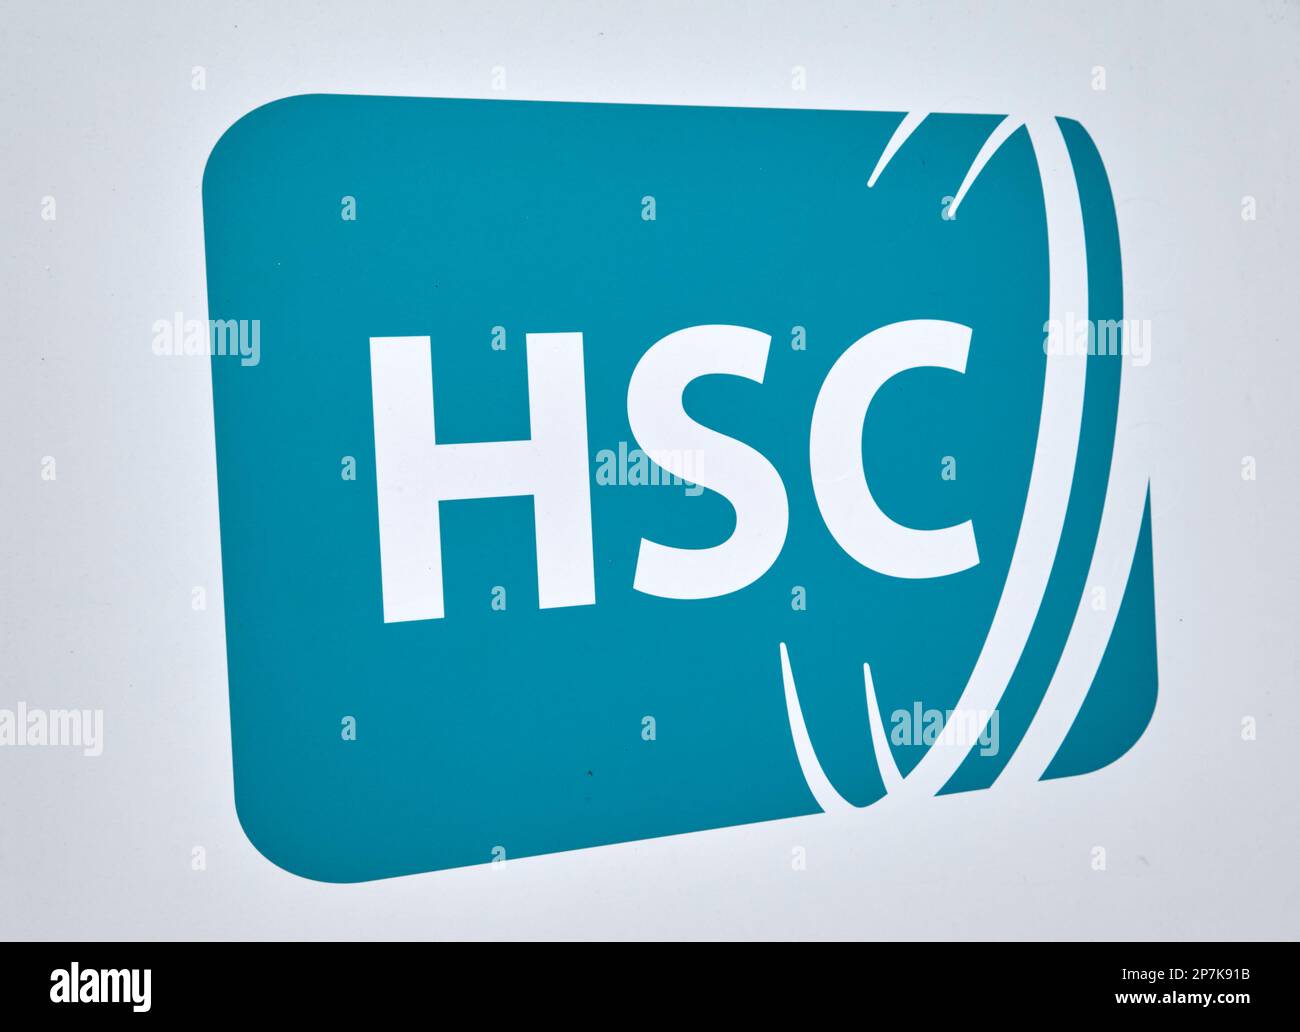 HSC Health and social Care Agence de santé publique pha Belfast Irlande du Nord Royaume-Uni Banque D'Images